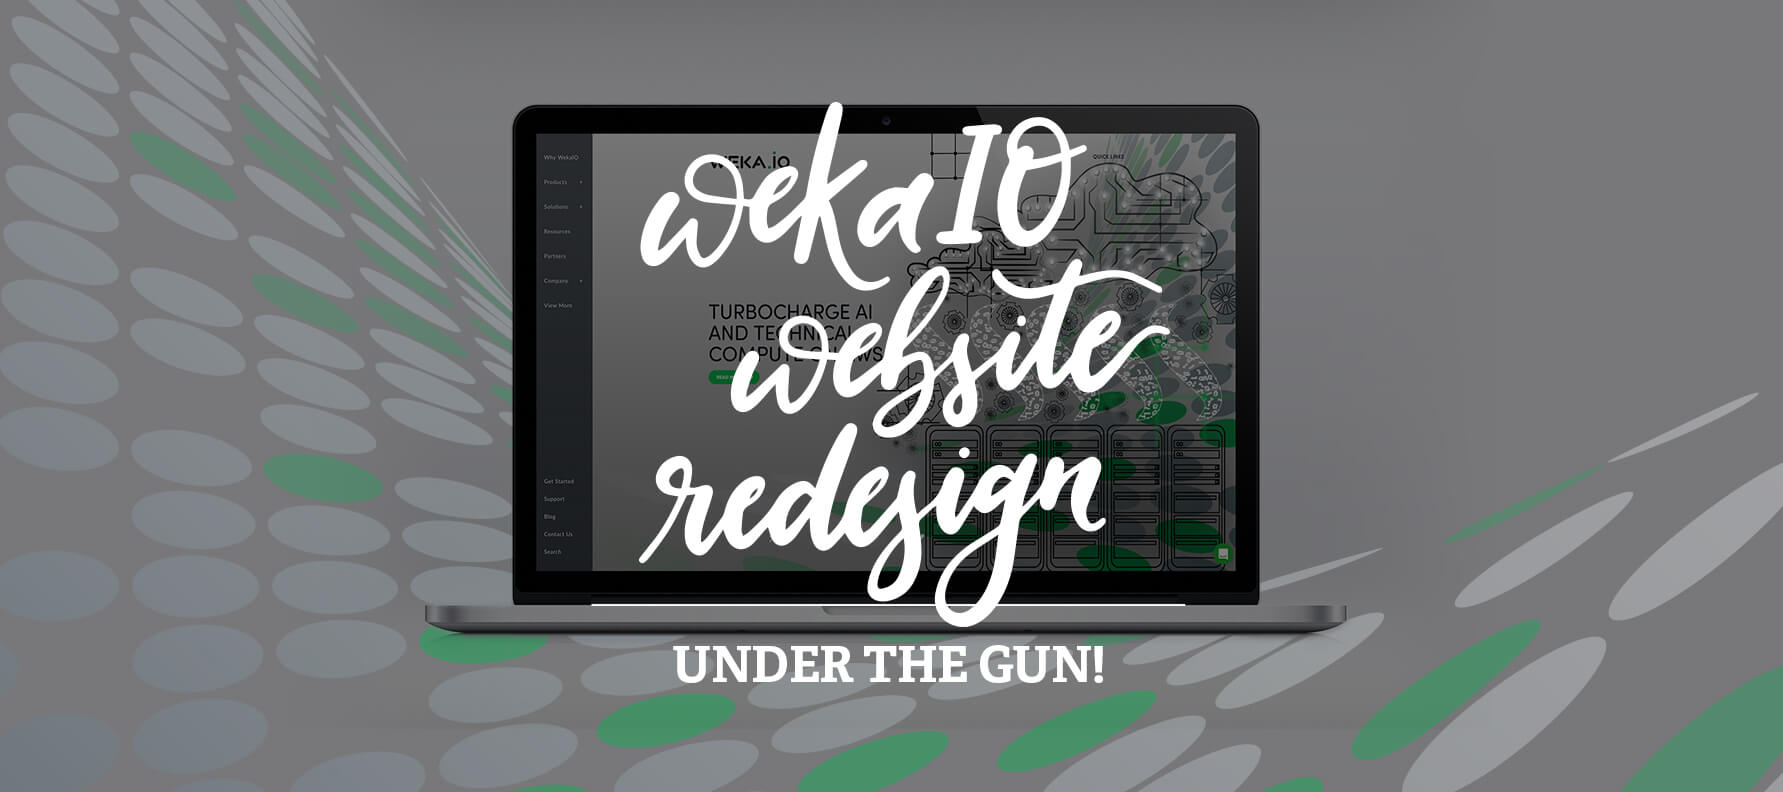 WekaIO Website Redesign, Under the Gun